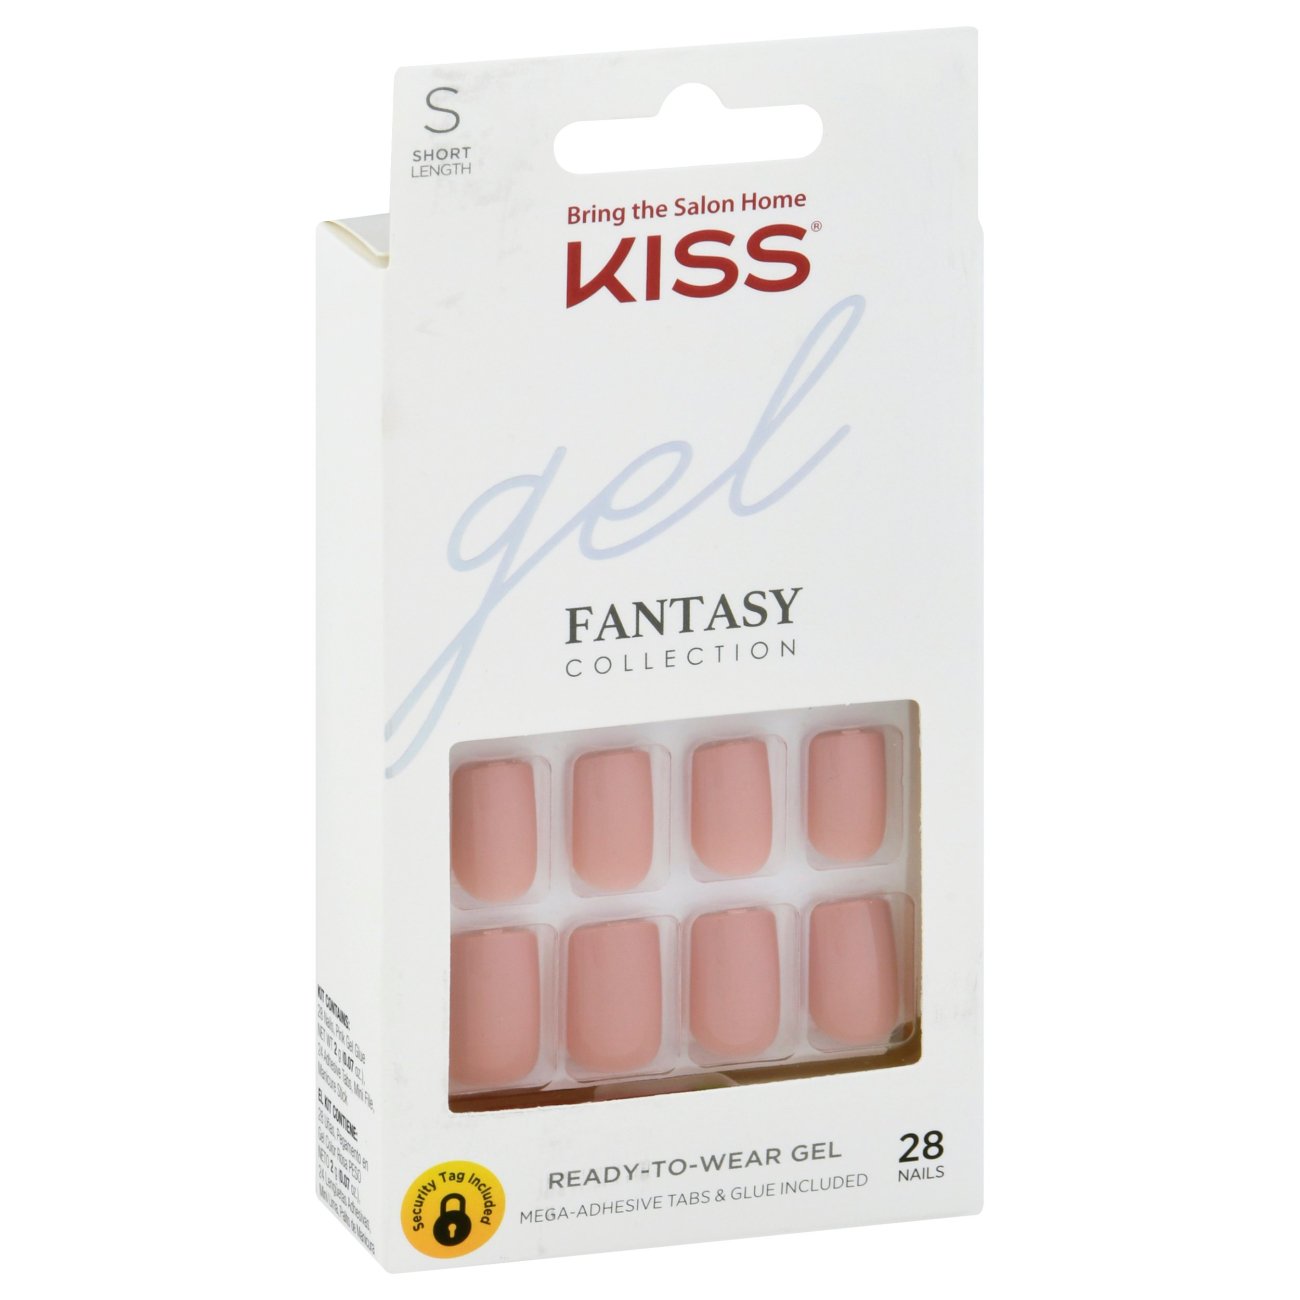 KISS Gel Fantasy Collection Nails - Ribbons - Shop Nail Sets at H-E-B